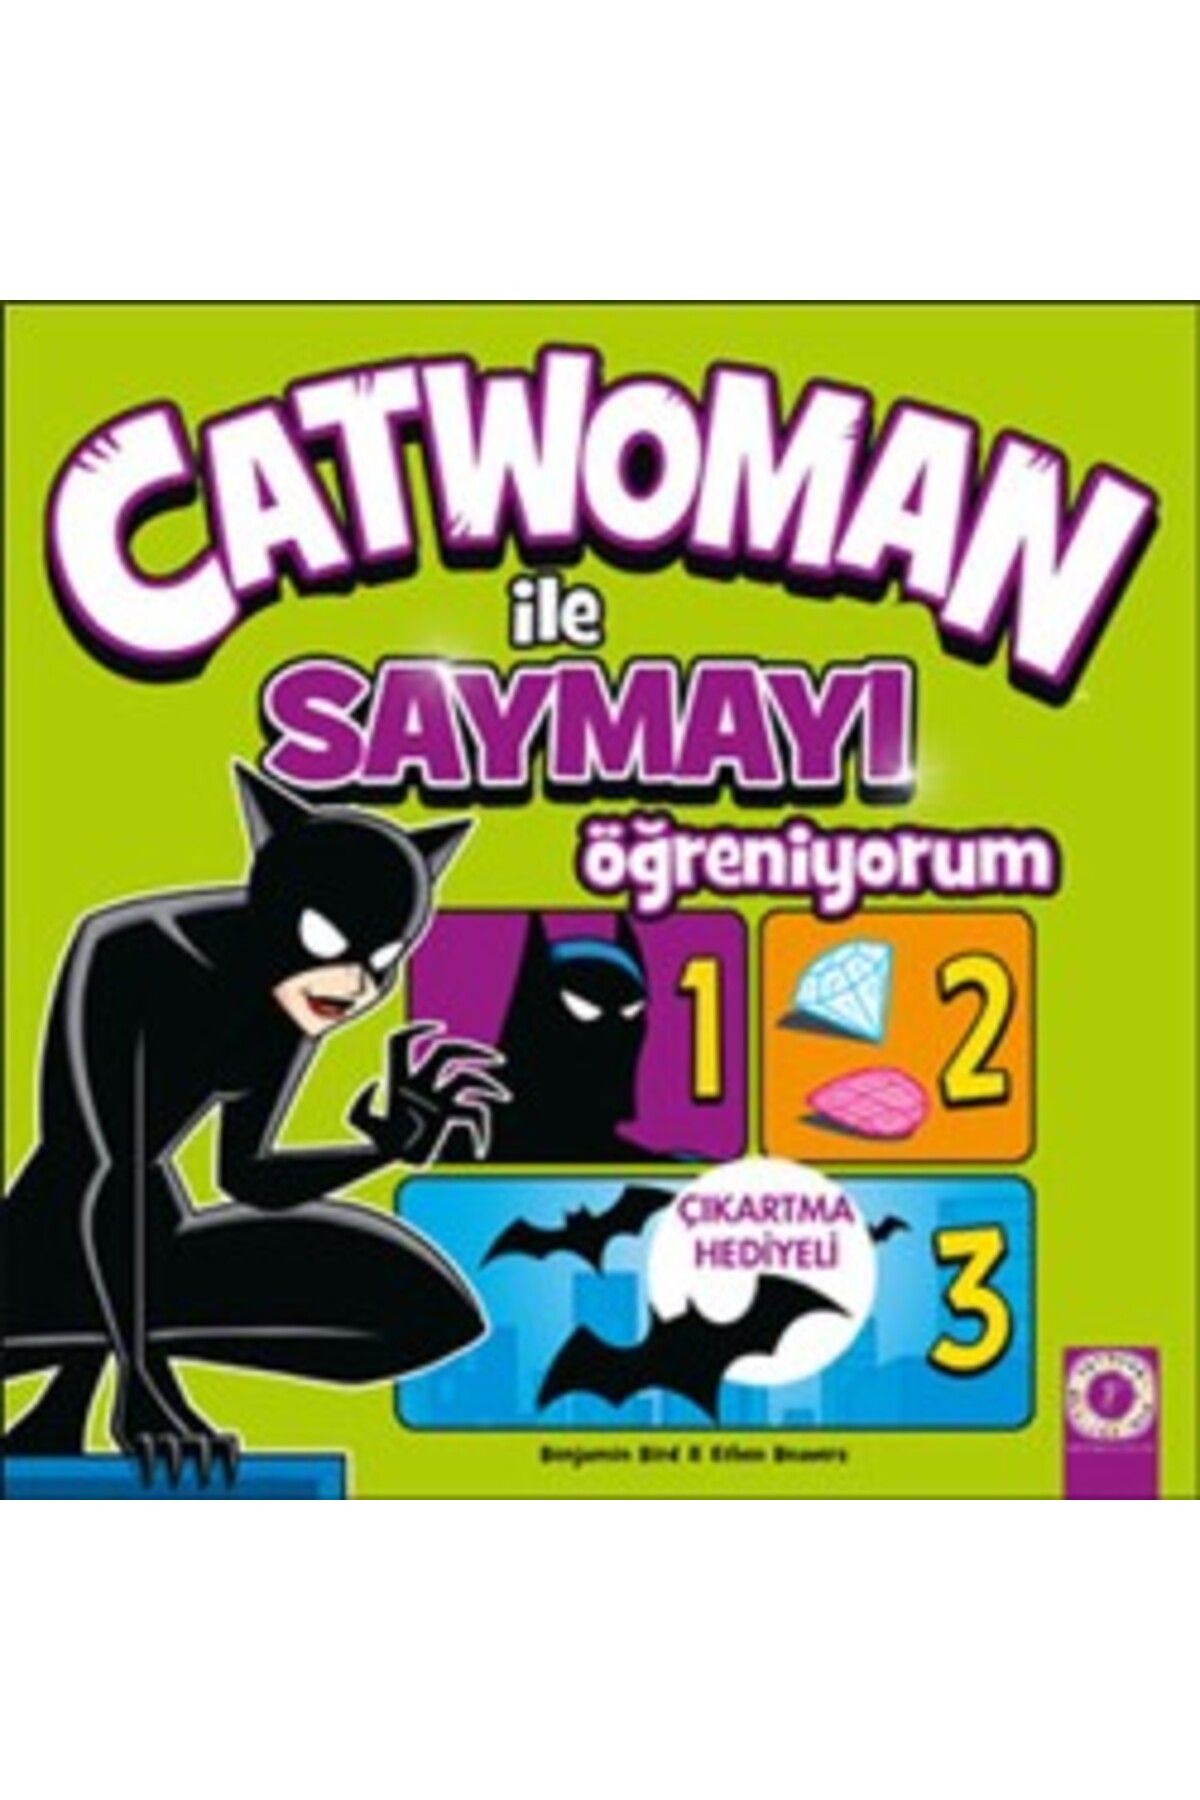 Artemis Yayınları Catwoman ile Saymayı Öğreniyorum